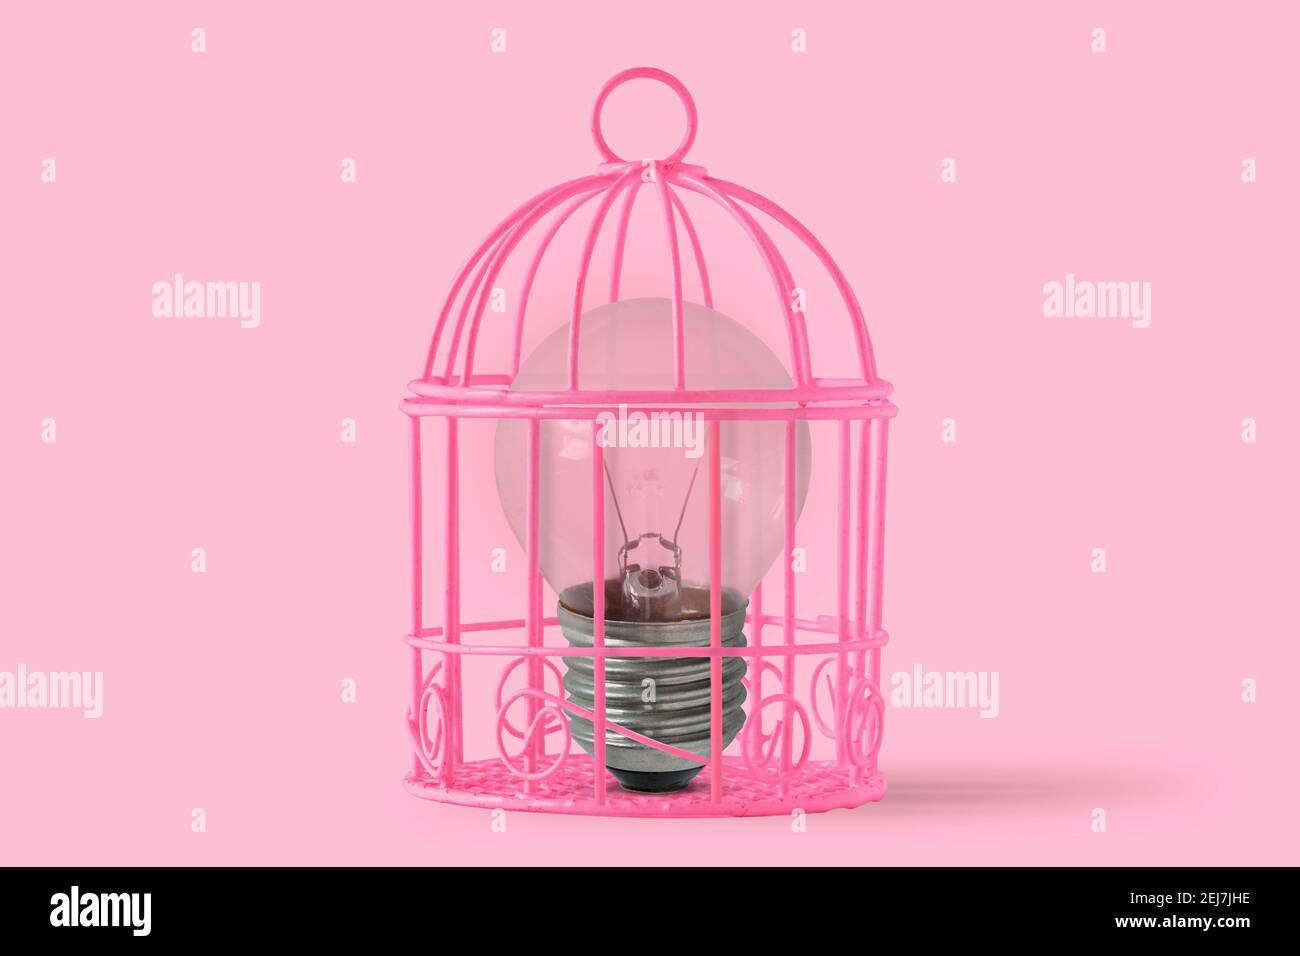 Lampadina in gabbia di uccello rosa su sfondo rosa - Concetto di mente e libertà della donna Foto Stock